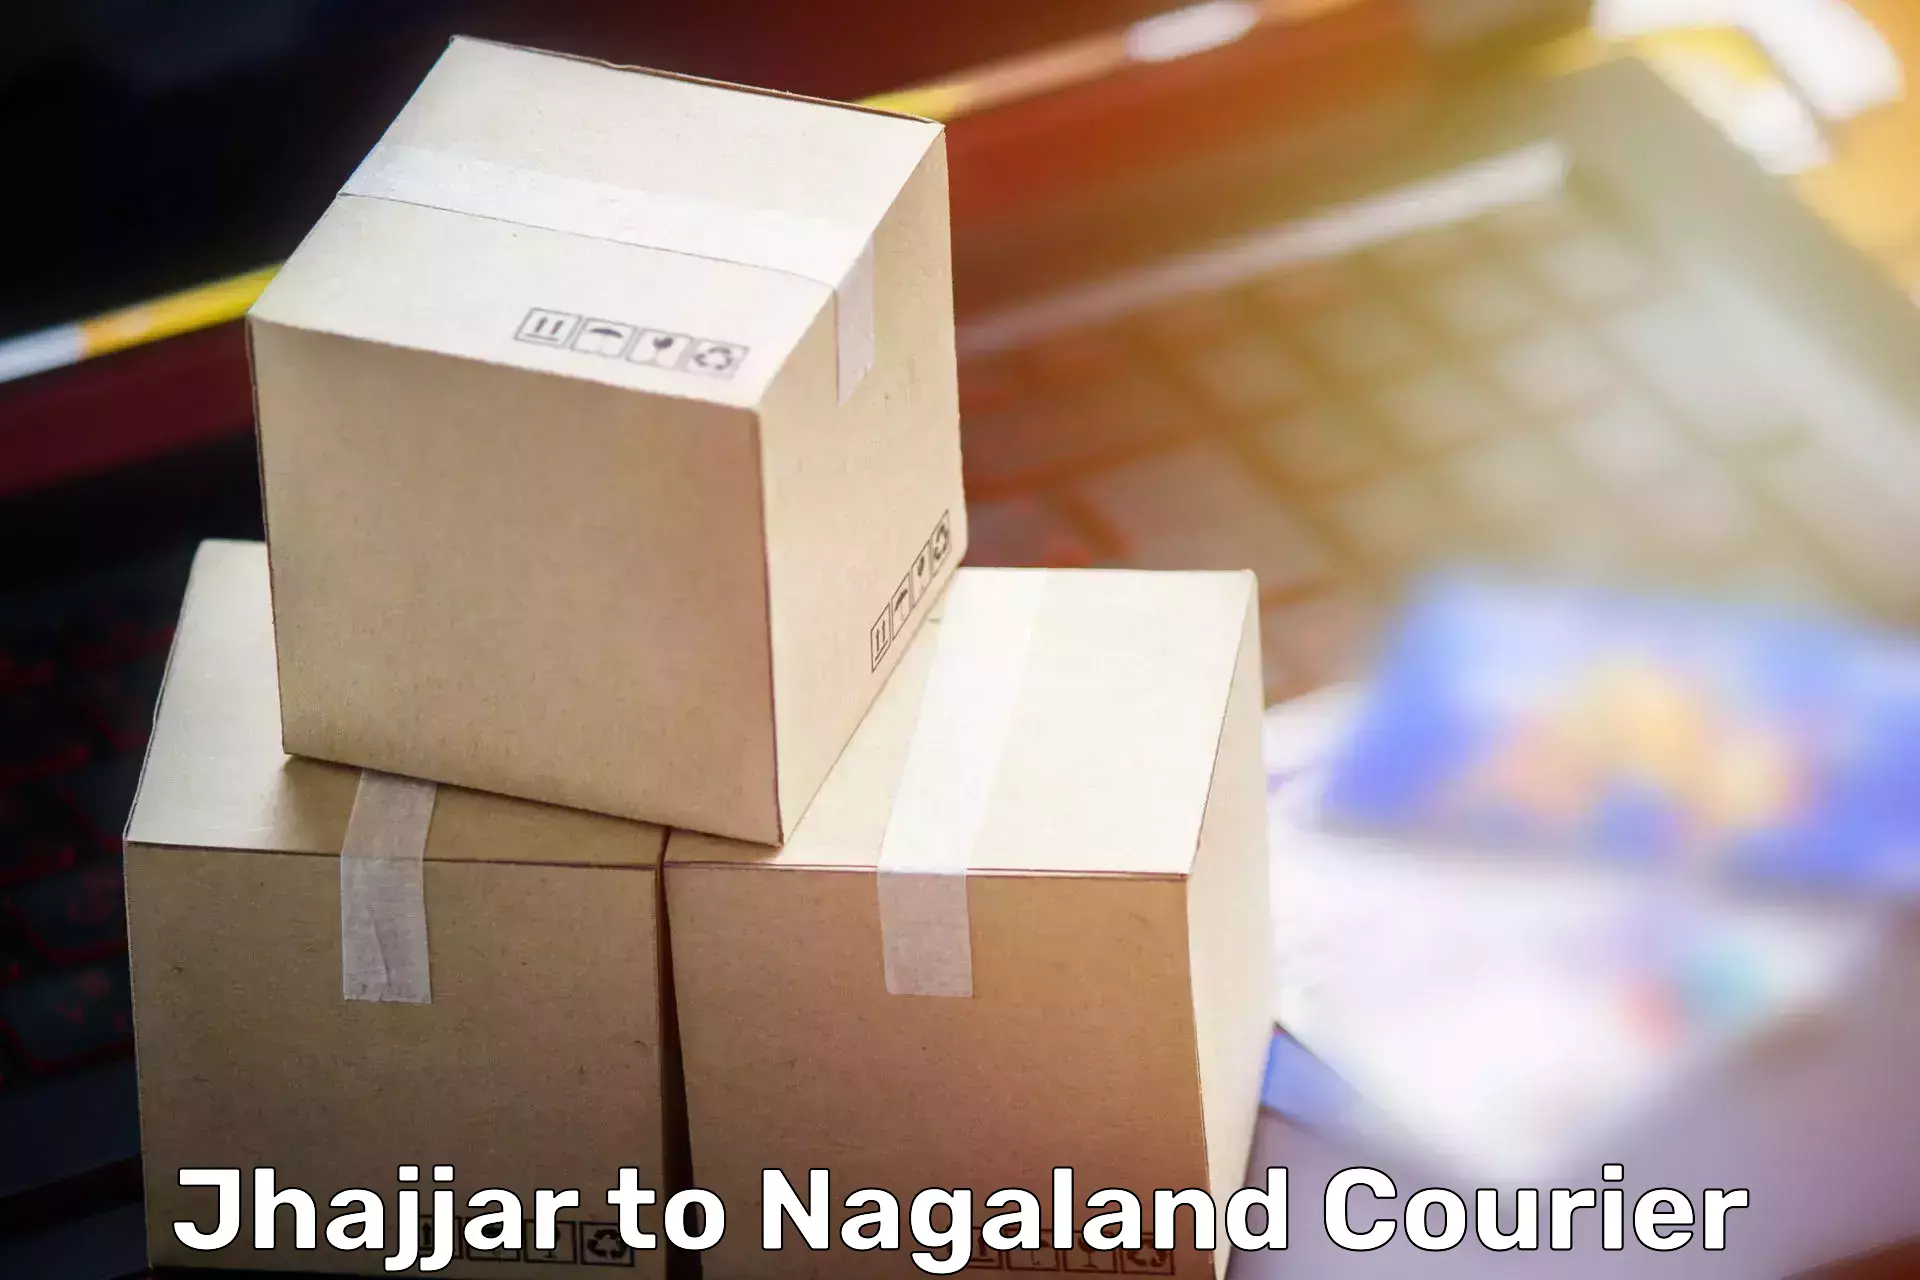 Professional packing services Jhajjar to Nagaland